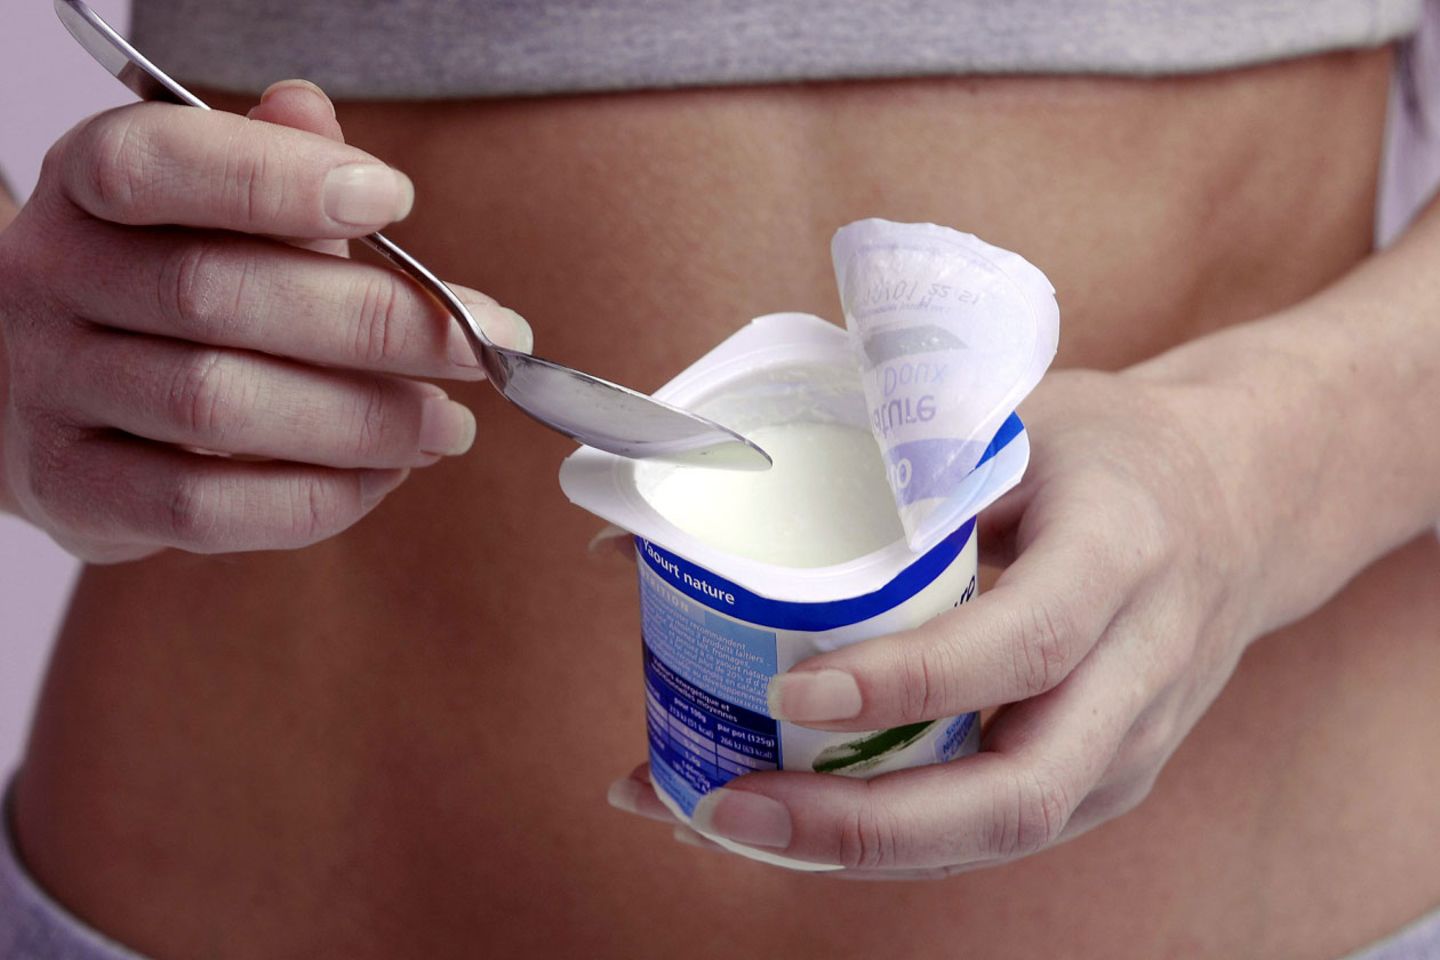 Bakterien im Dessert: Ob probiotische Joghurts gesünder sind als normale, ist fraglich.